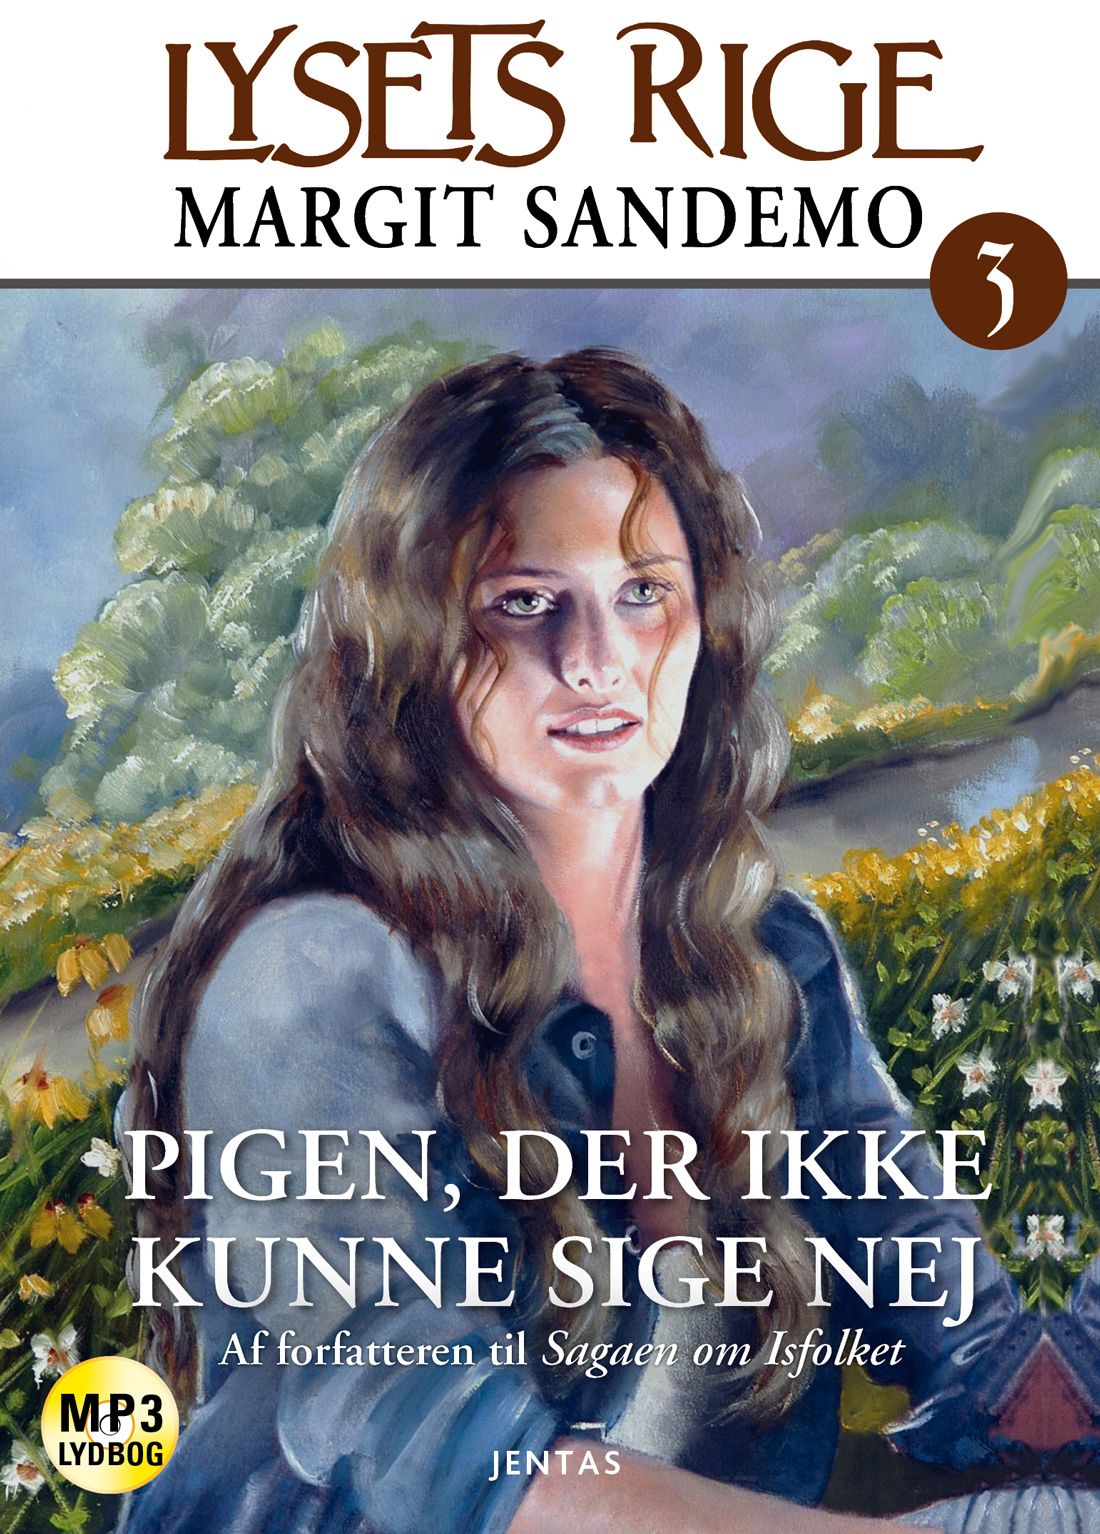 Lysets rige 3 - Pigen som ikke kunne sige nej, lydbog af Margit Sandemo